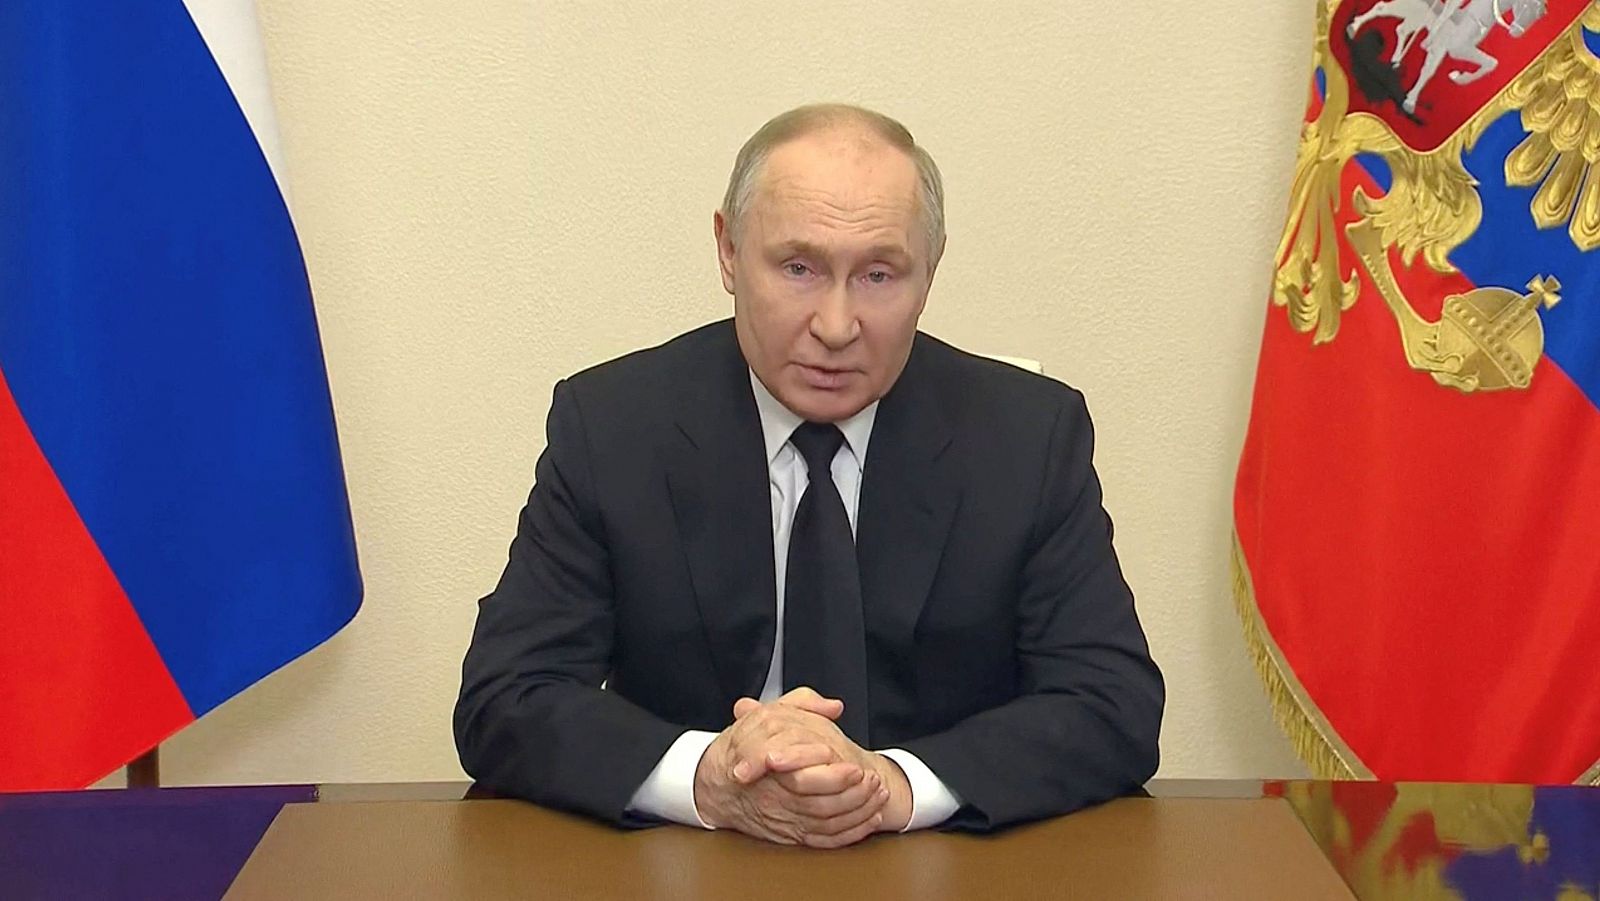 Atentado Moscú: Putin condena el ataque y clama venganza